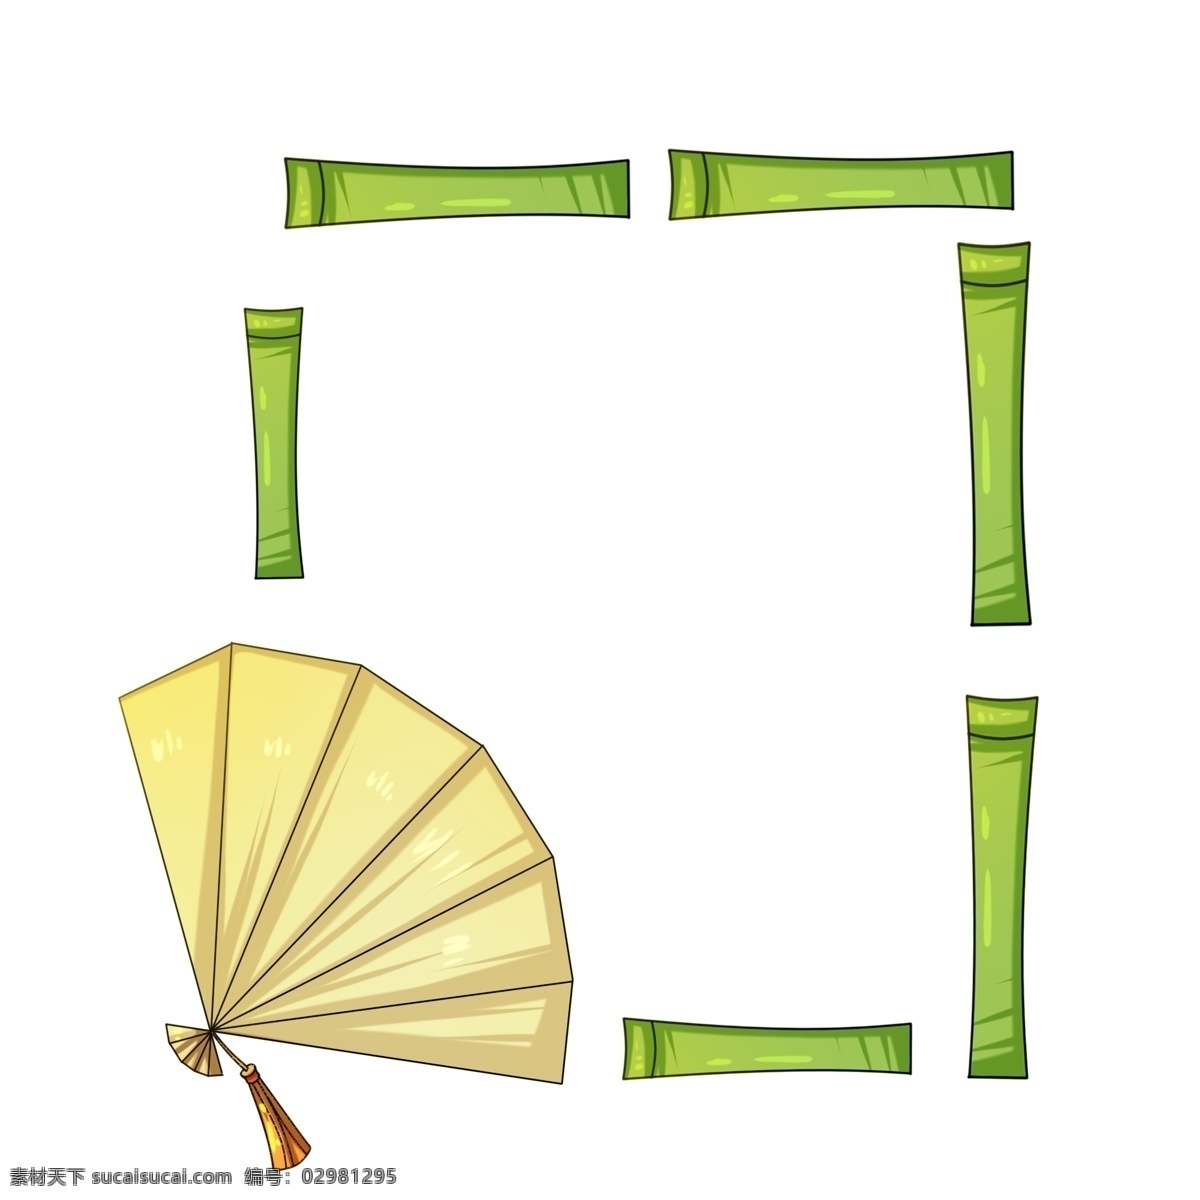 中国 风 绿色 竹子 边框 中国风 绿色边框 手绘边框 卡通边框 扇子 竹子边框 创意边框 扇子边框 插画